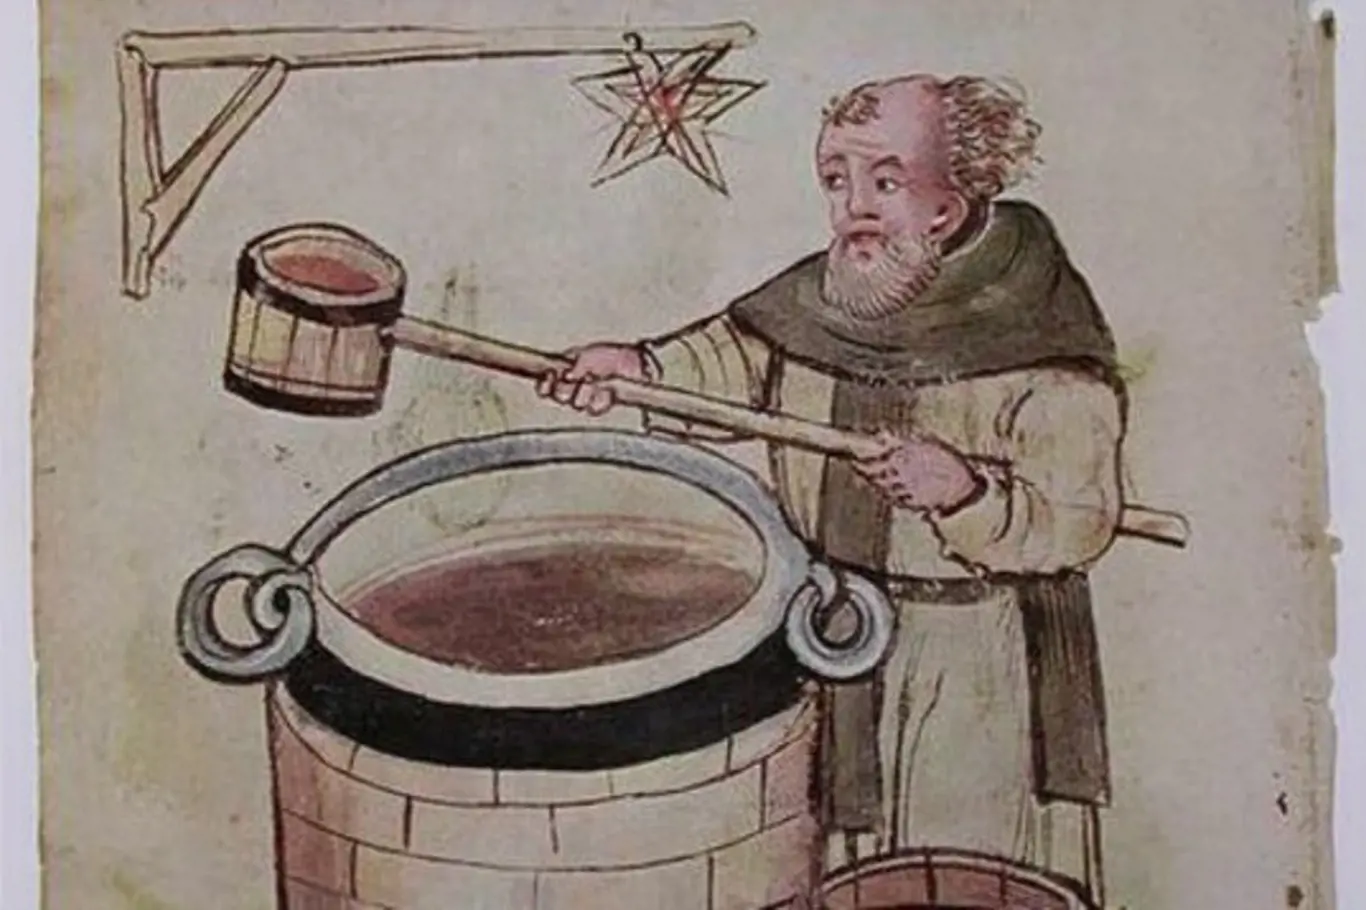 Víno bylo ve středověku považováno za zdravý nápoj.